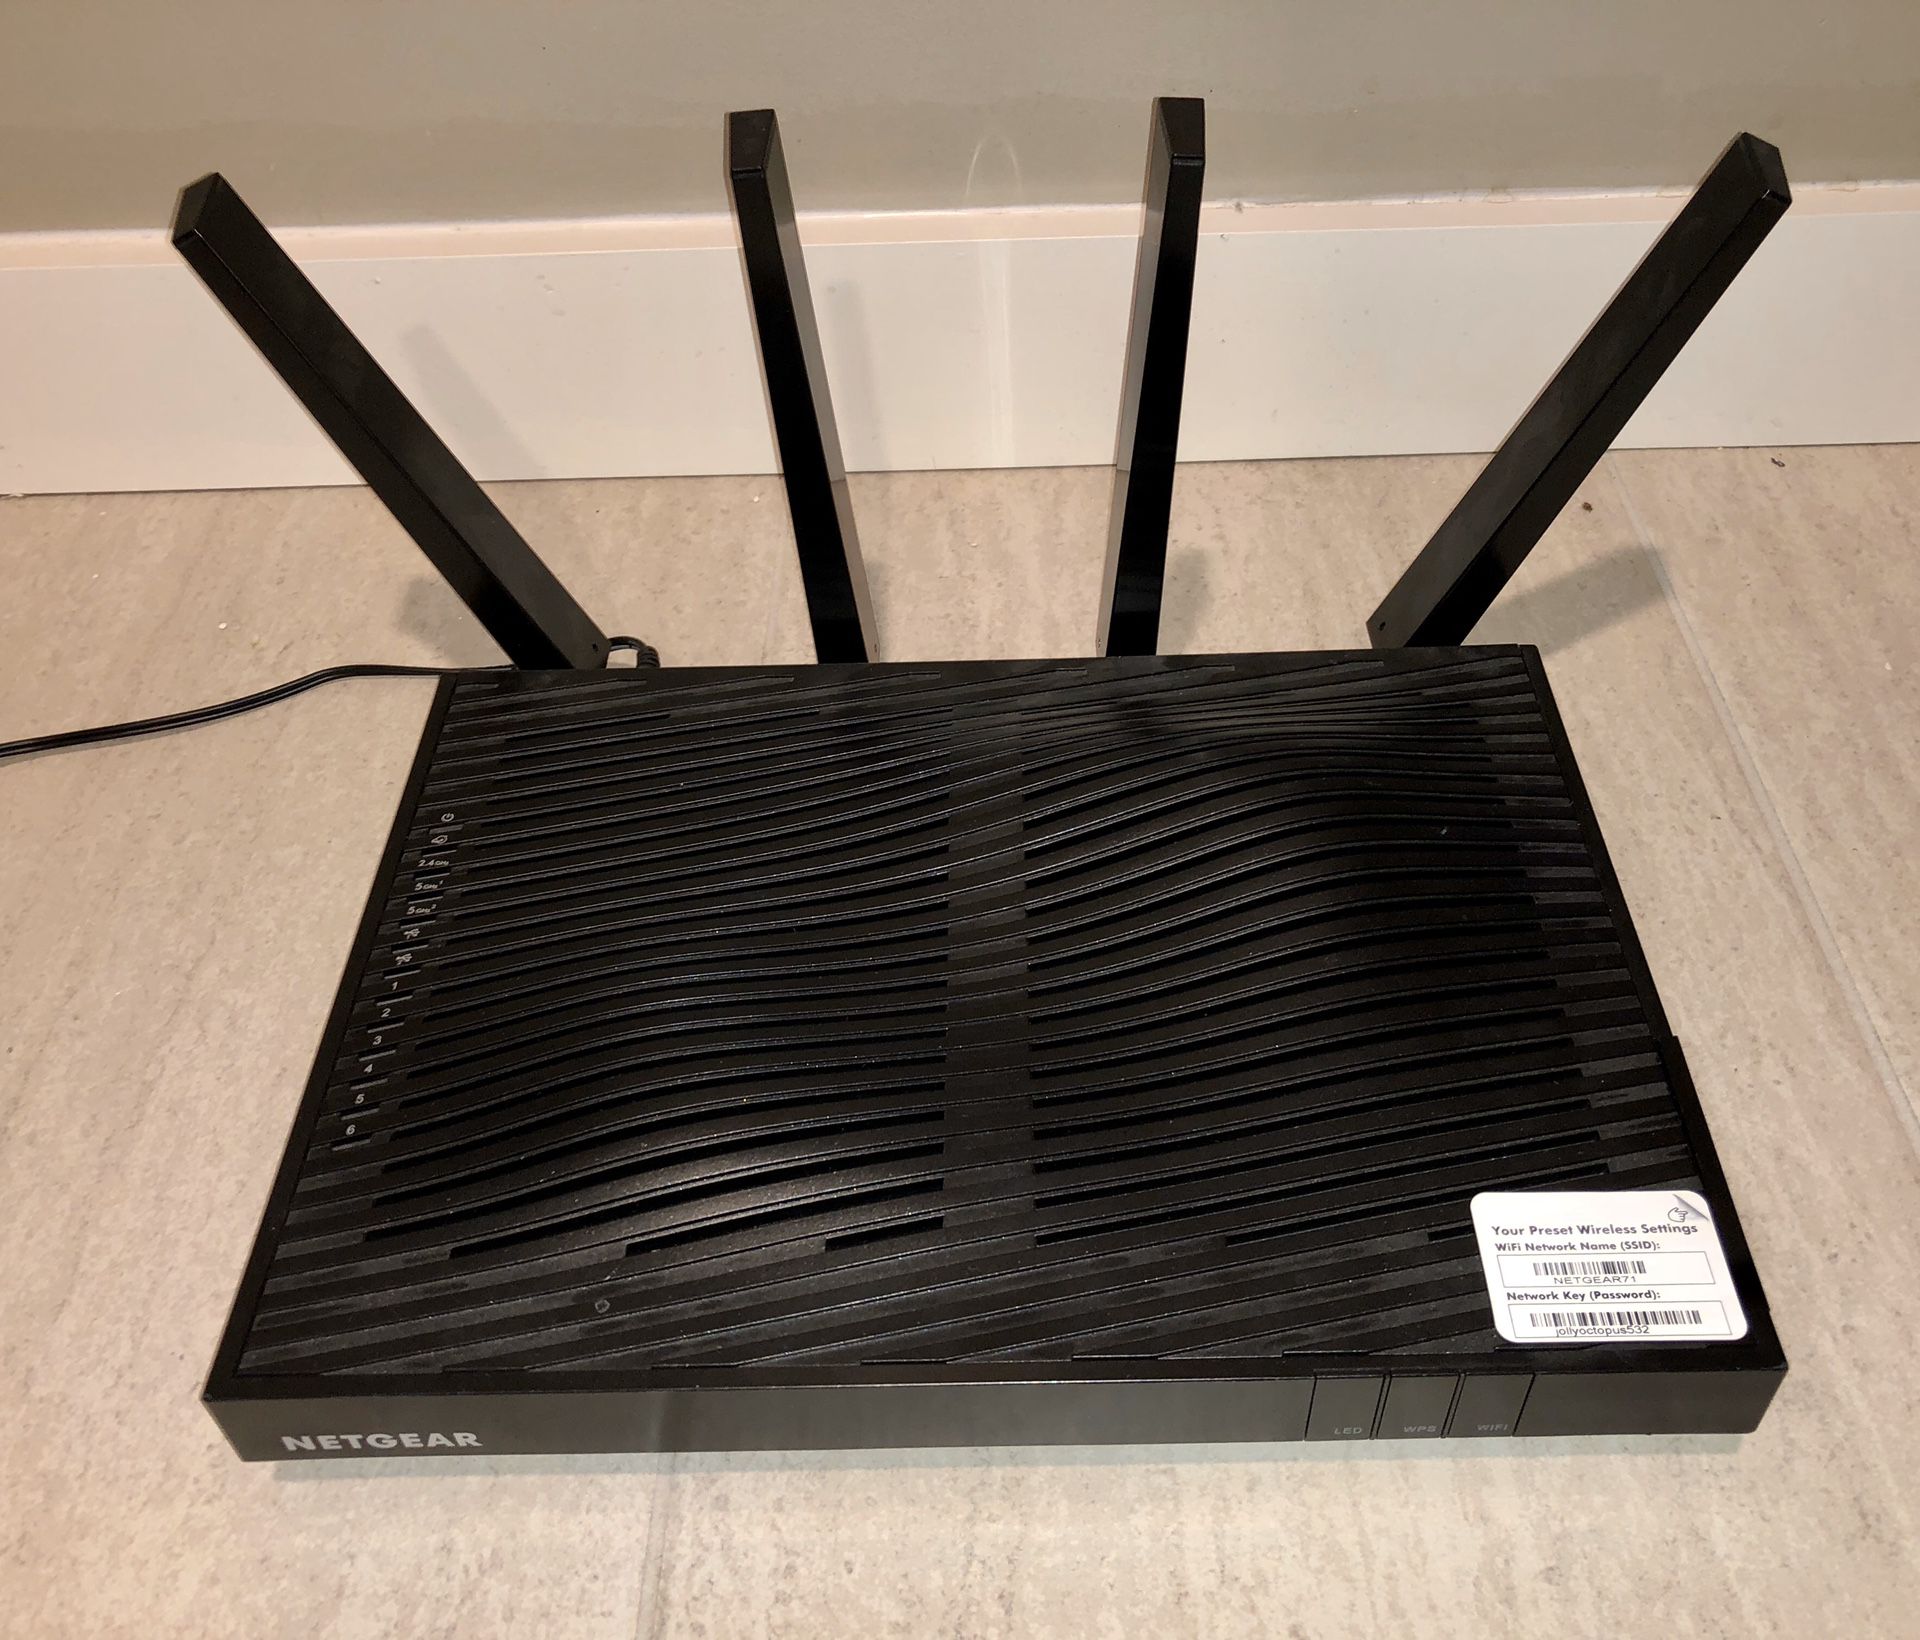 Netgear nighthawk x8 router